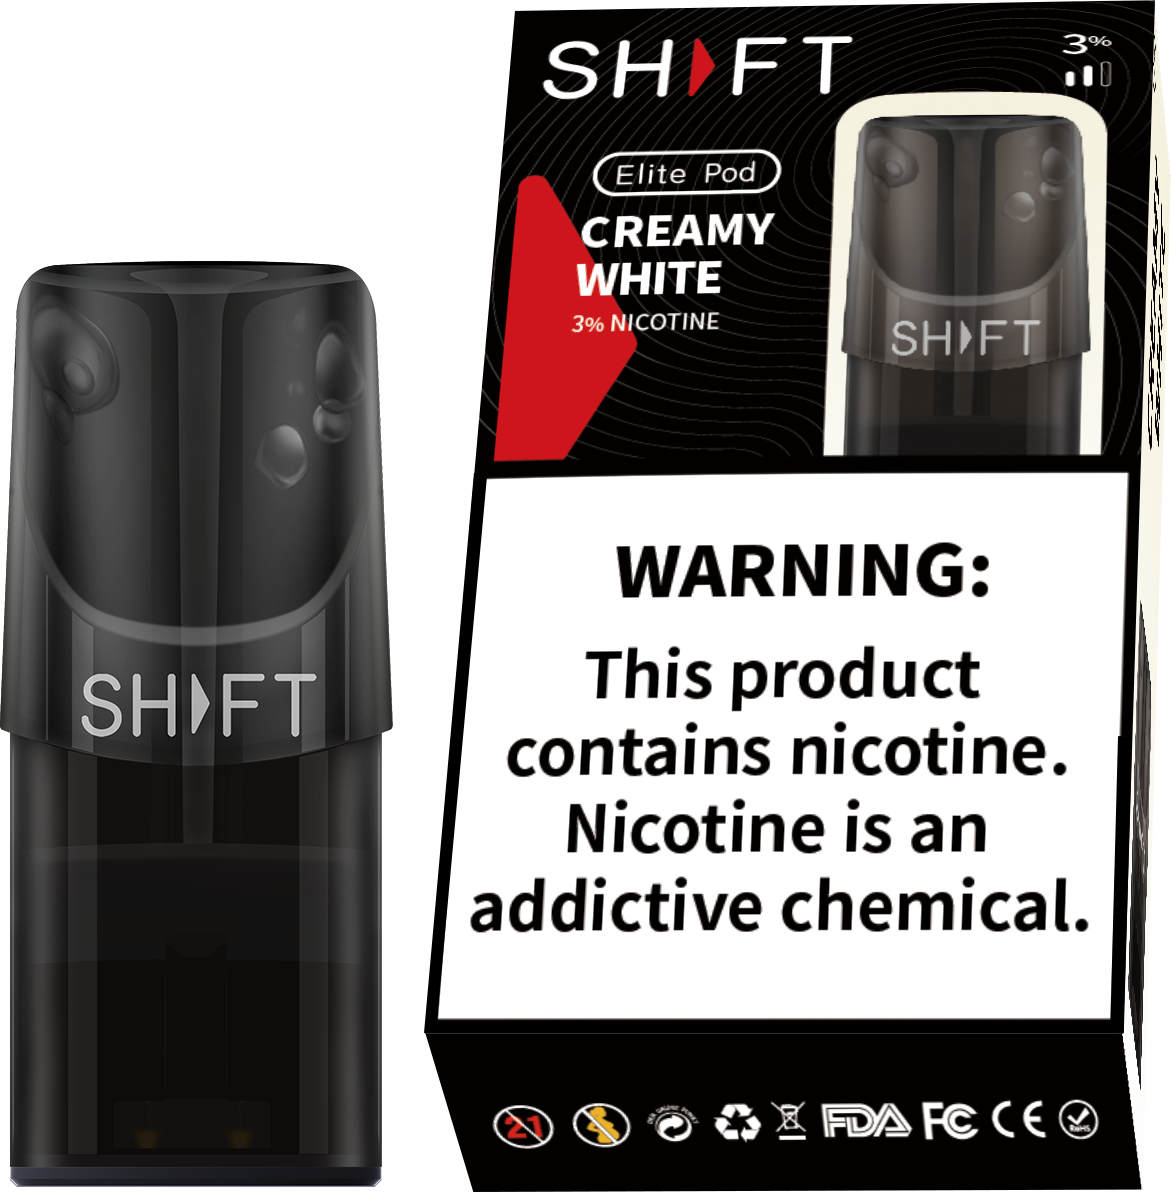 SHIFT S1 3% NICOTINE PODS